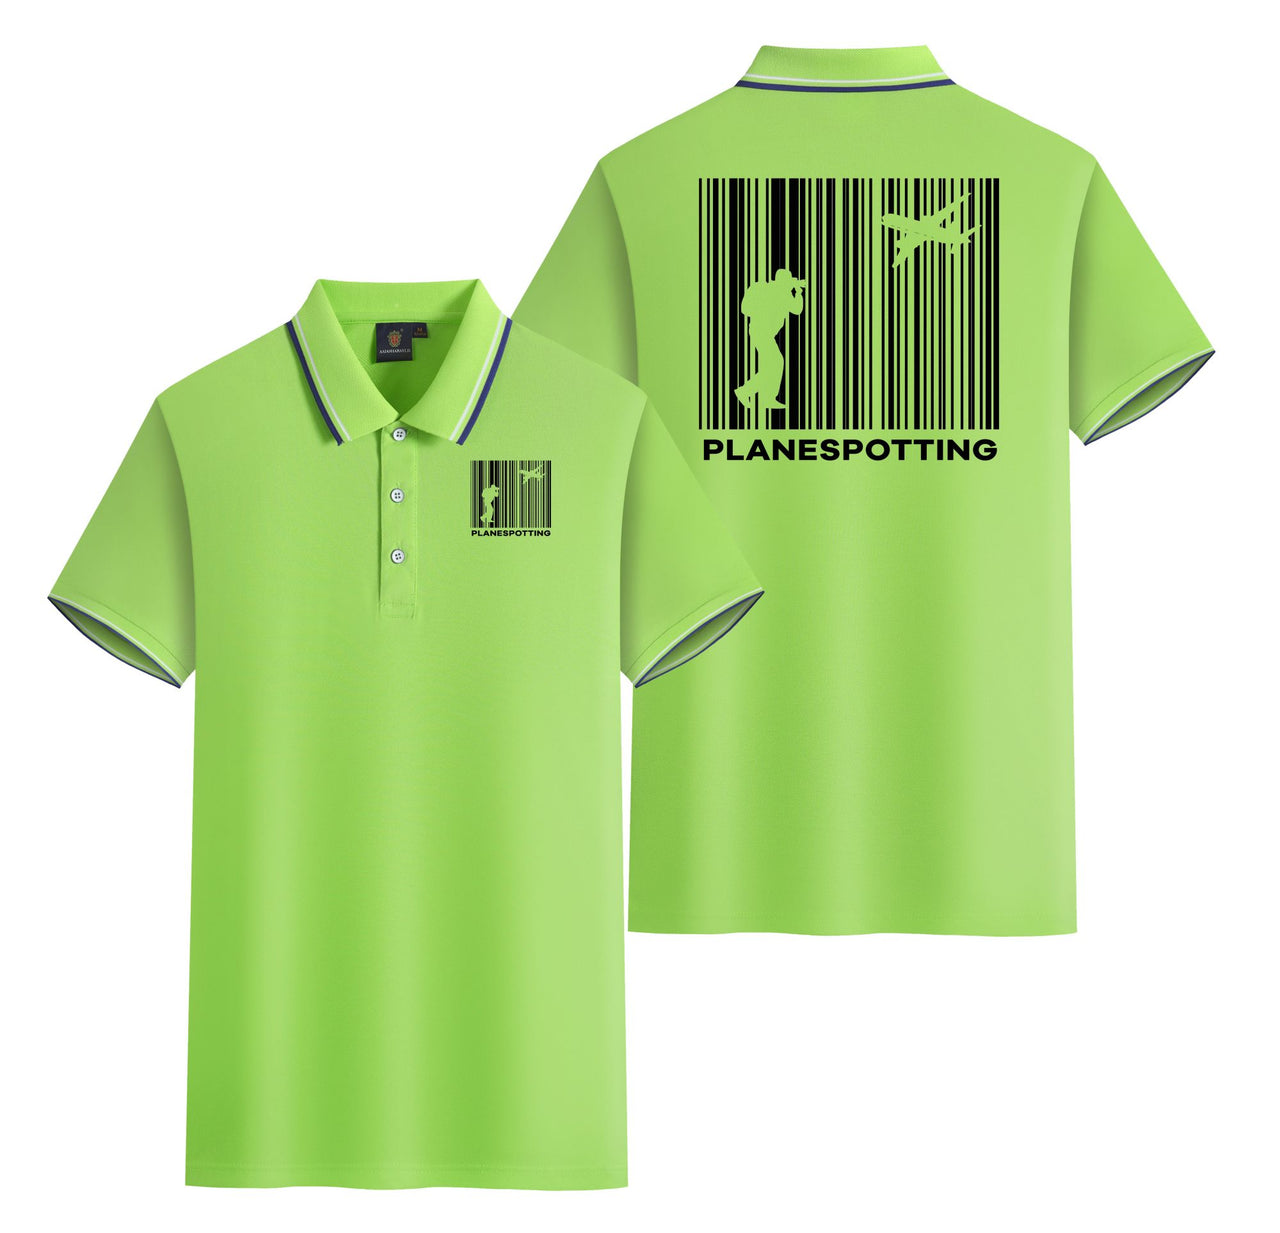 Planespotting Designed Stylish Polo T-Shirts (Double-Side)